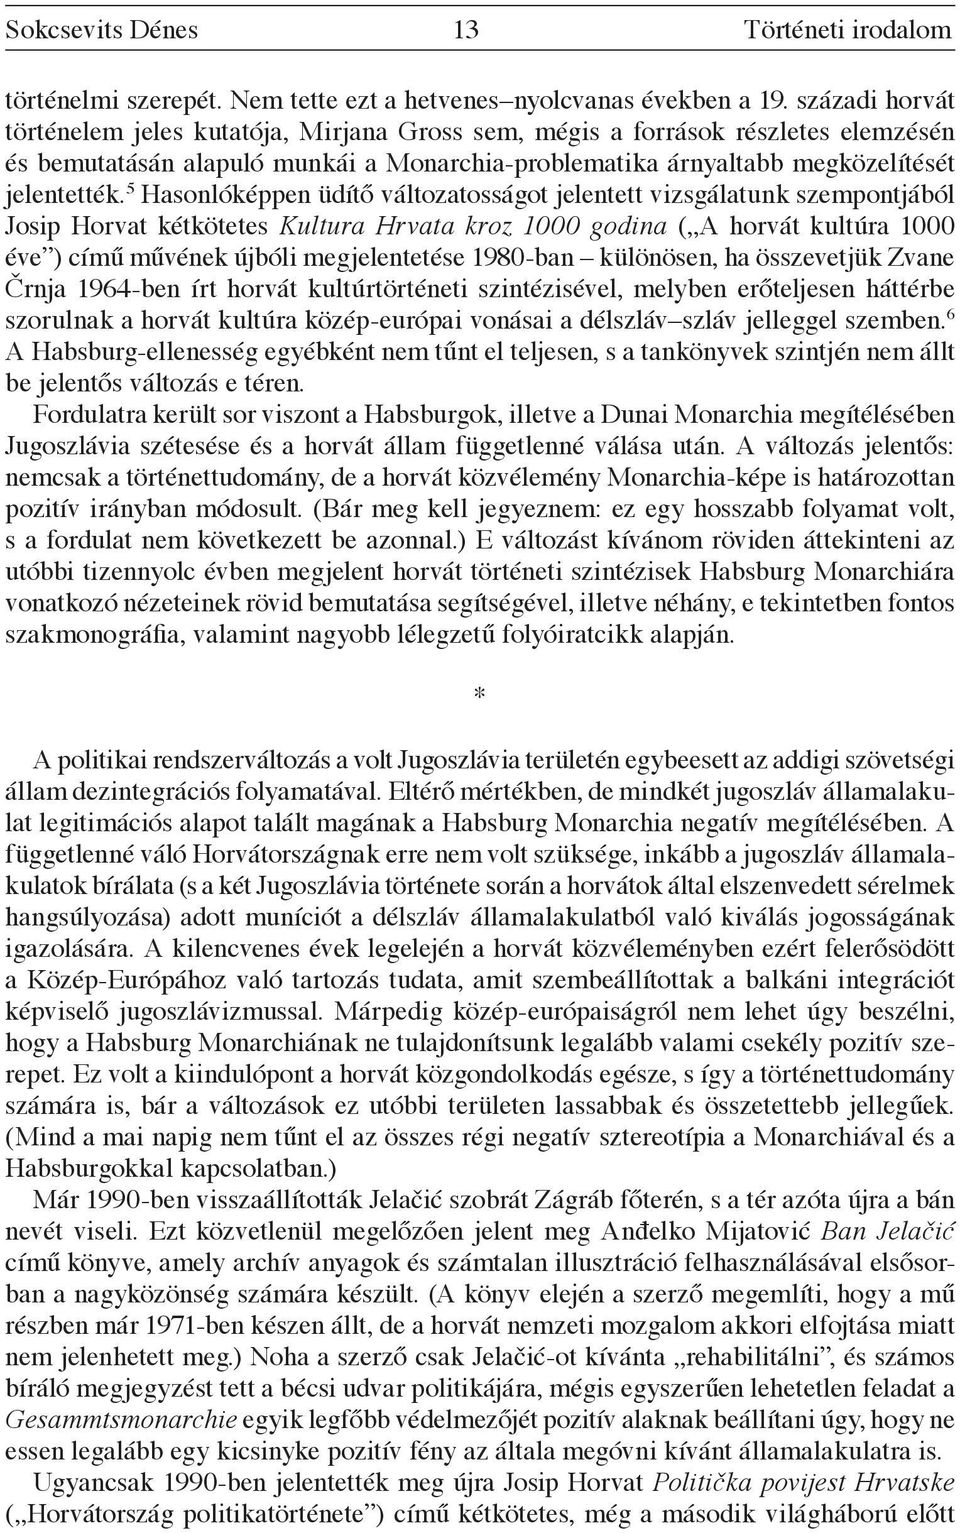 5 Hasonlóképpen üdítő változatosságot jelentett vizsgálatunk szempontjából Josip Horvat kétkötetes Kultura Hrvata kroz 1000 godina ( A horvát kultúra 1000 éve ) című művének újbóli megjelentetése